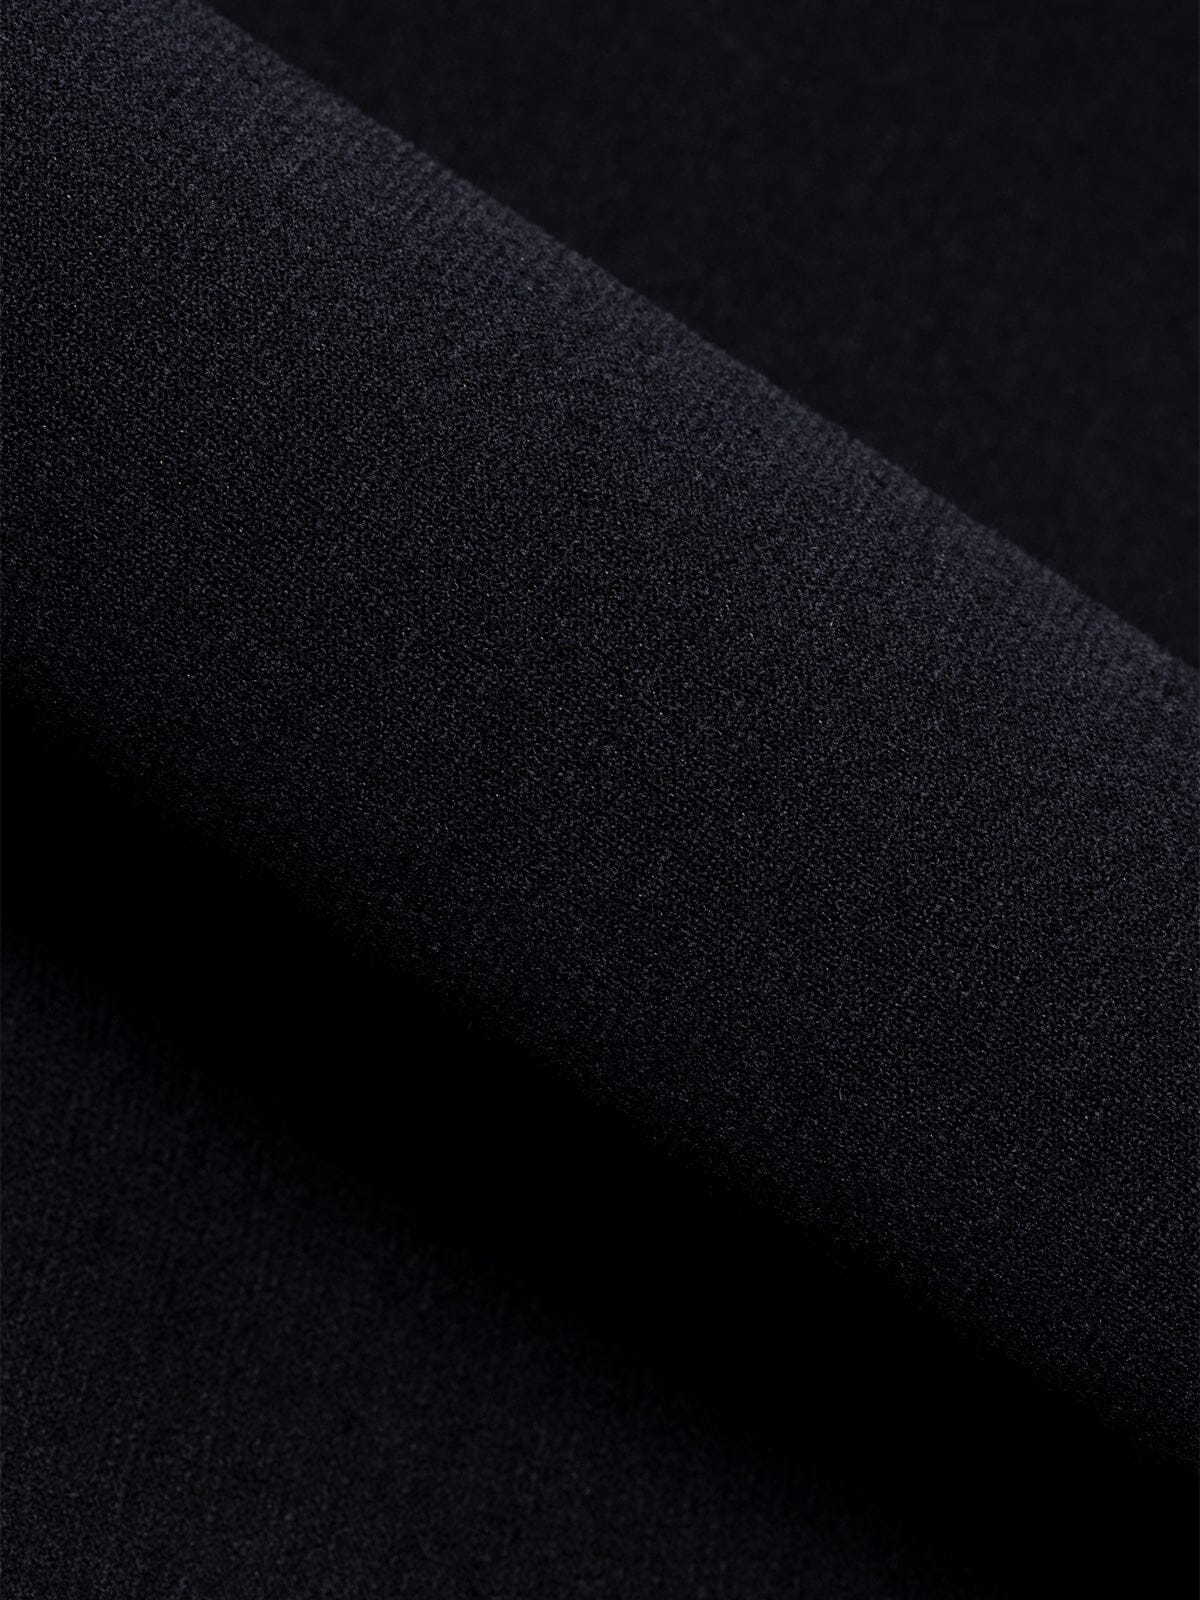 Mason : Power Wool by Mission Workshop - Wetterfeste Taschen und technische Bekleidung - San Francisco & Los Angeles - Für die Ewigkeit gebaut - Garantiert